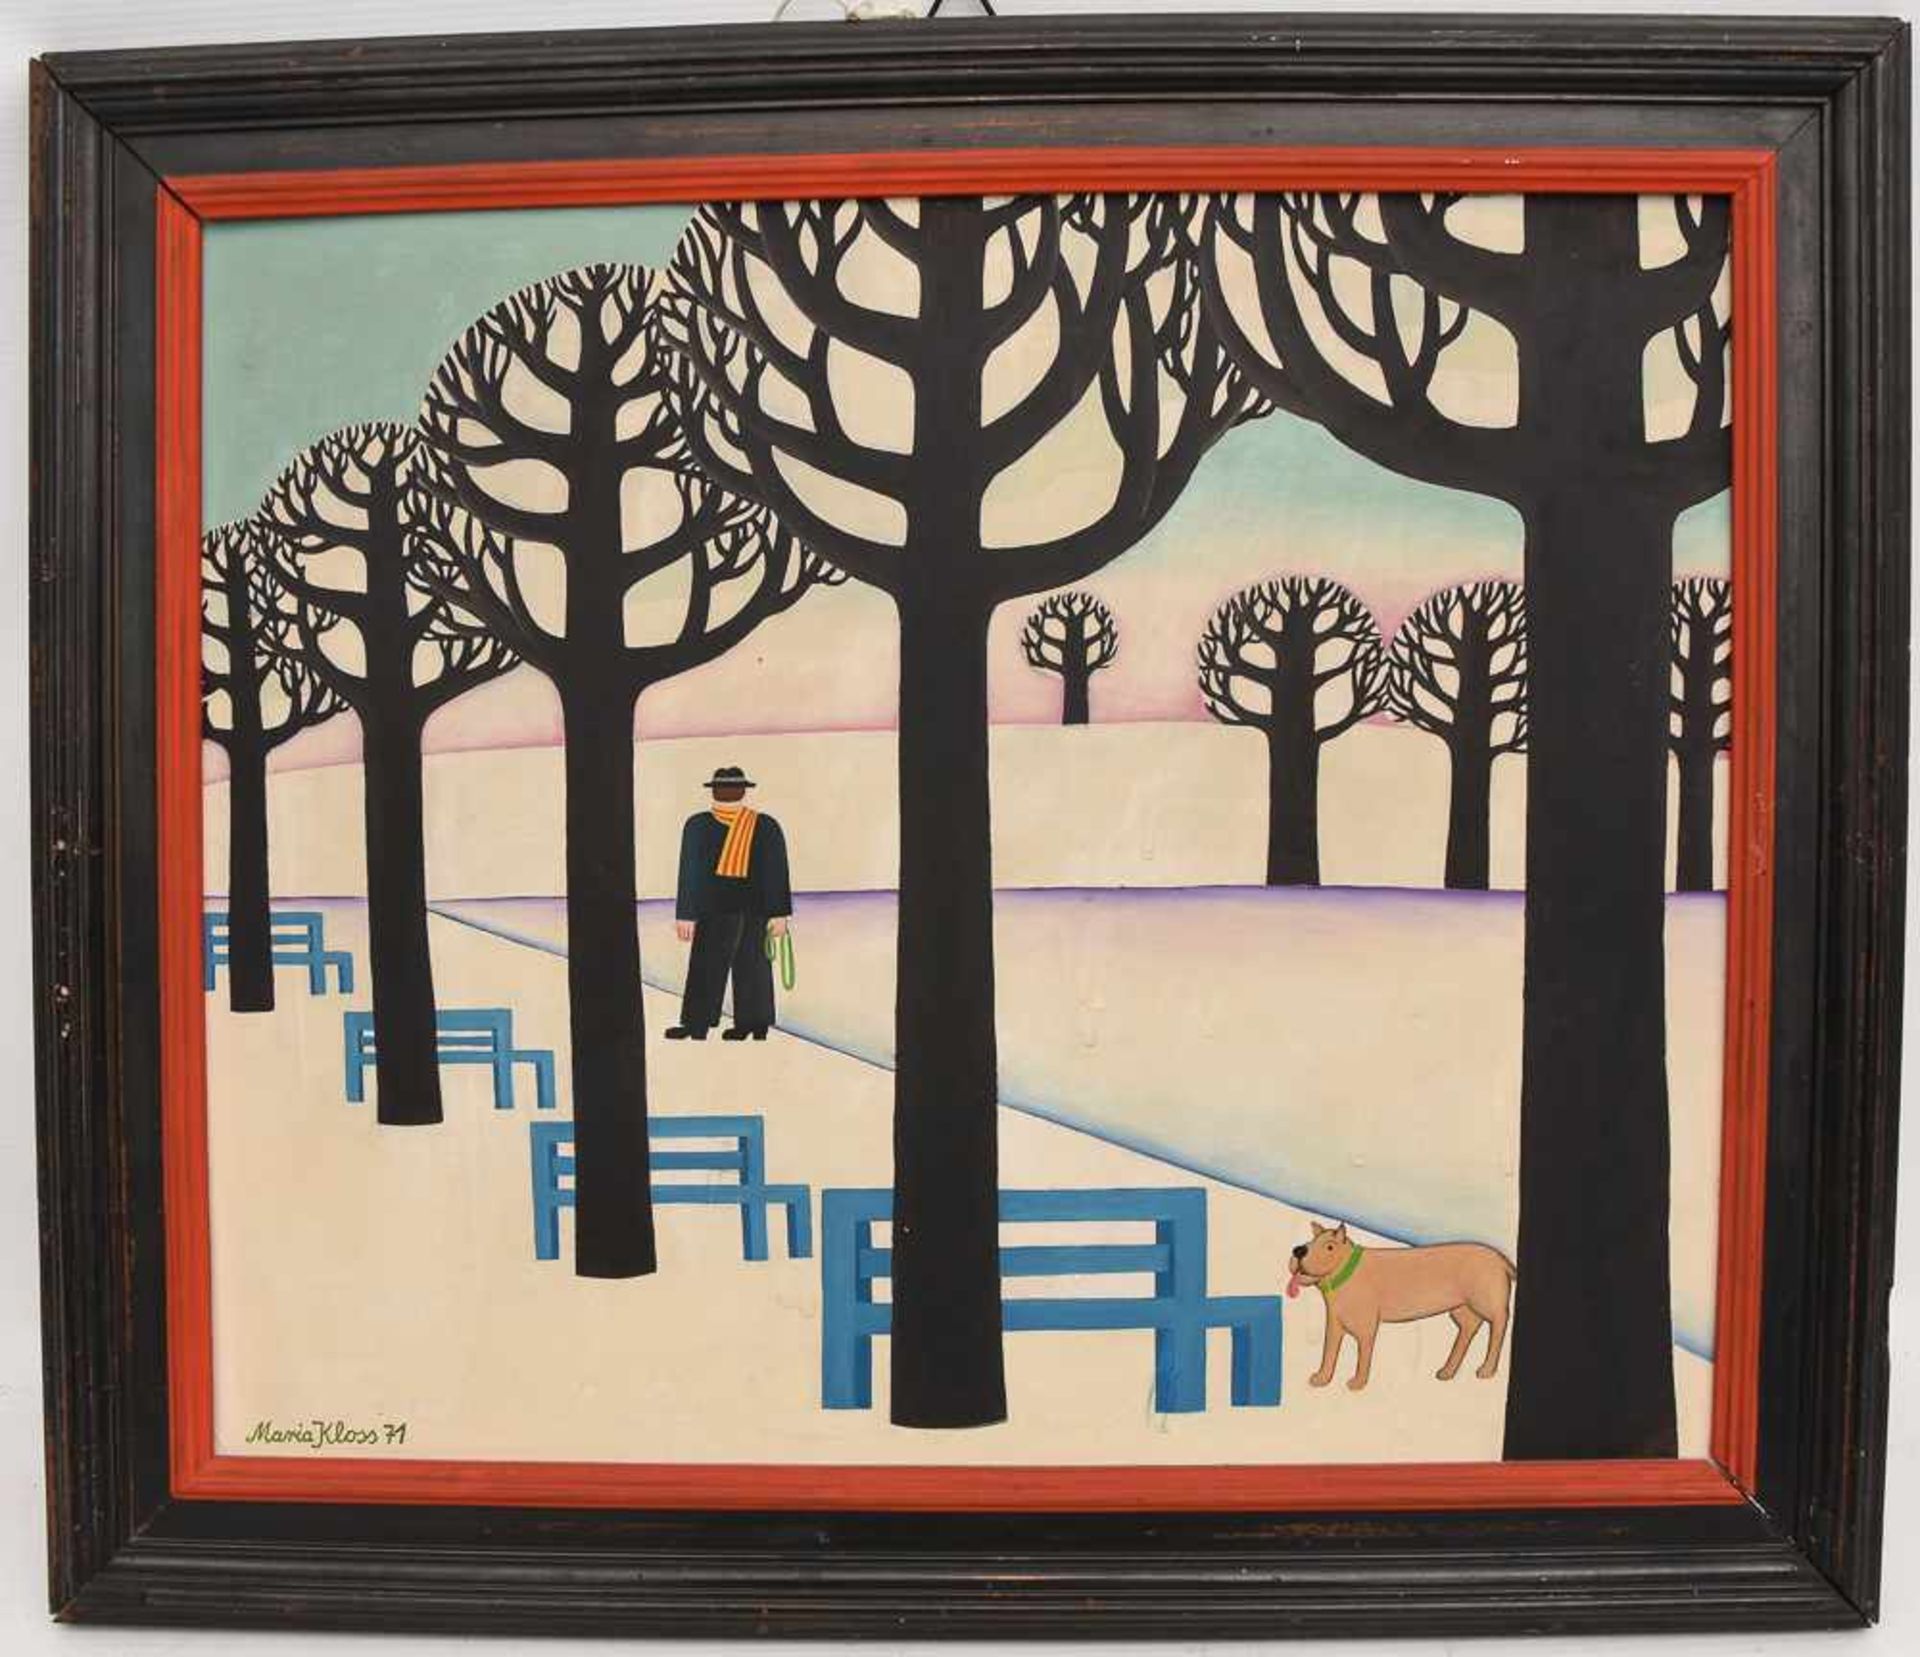 MARIA KLOSS, "Winterspaziergänger mit Hund", Öl auf Karton, 1971, gerahmt. Unten links signiert